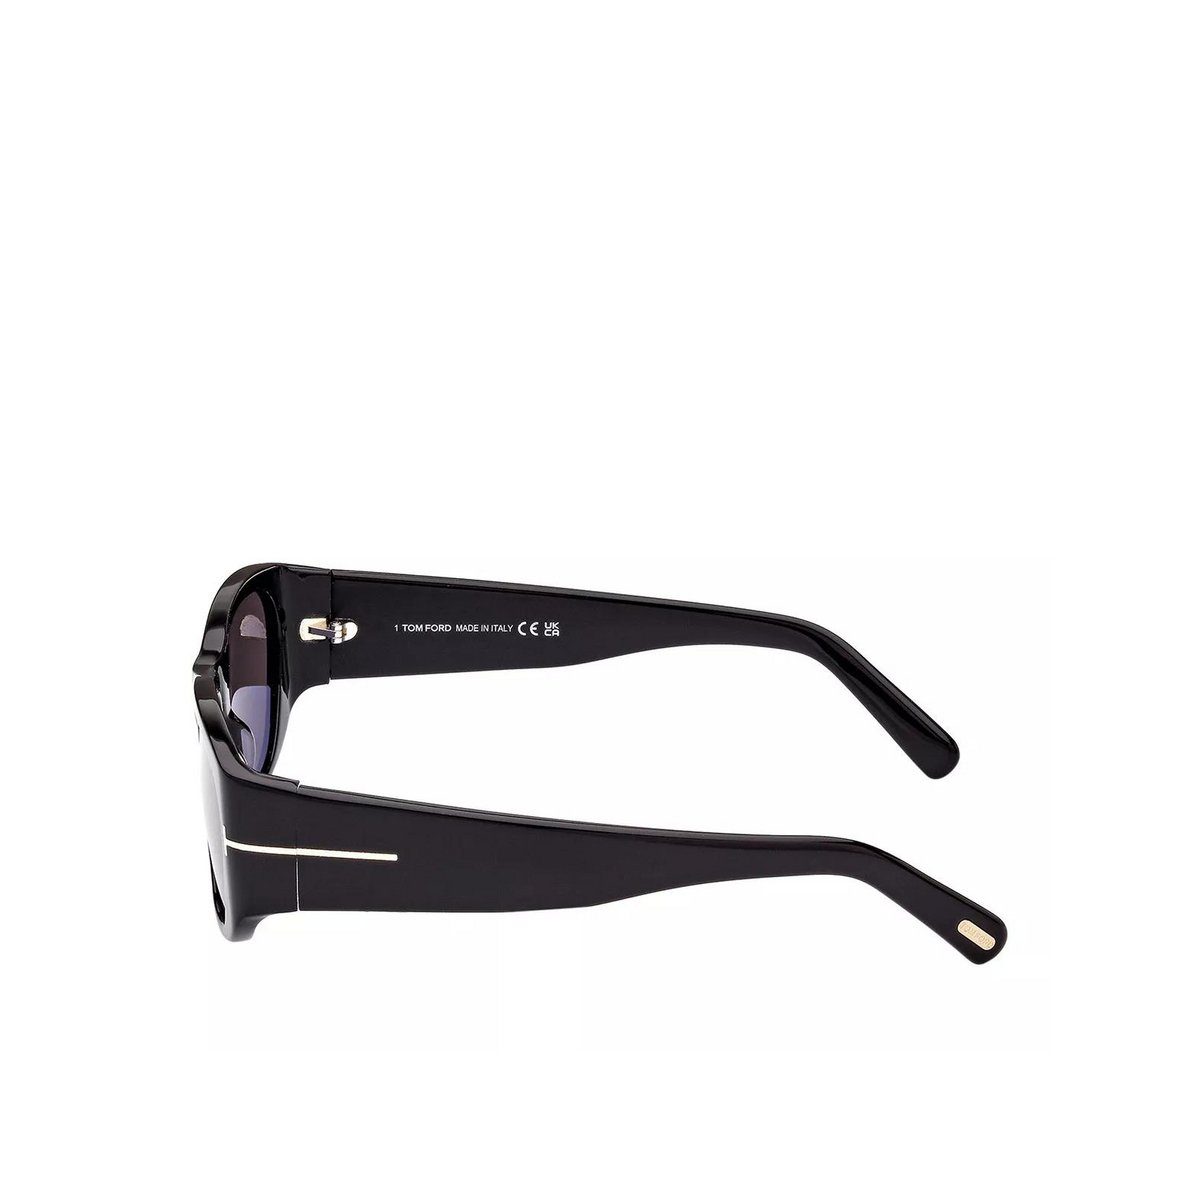 (1-St) schwarz Tom Ford Sonnenbrille